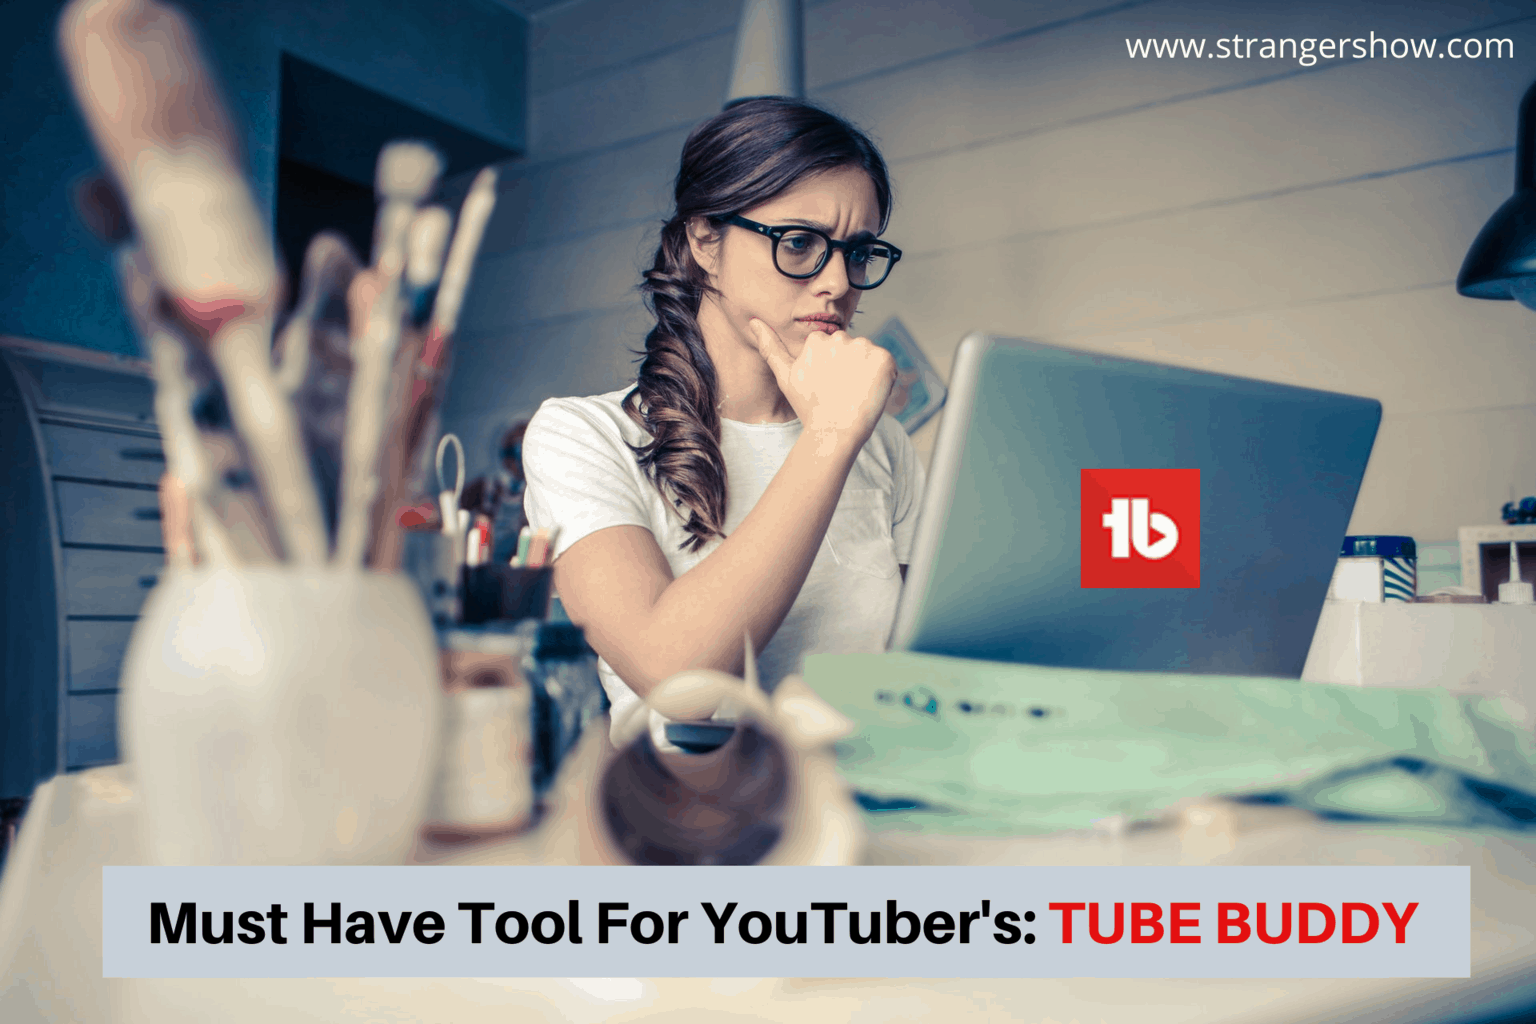 tubebuddy for youtube creators